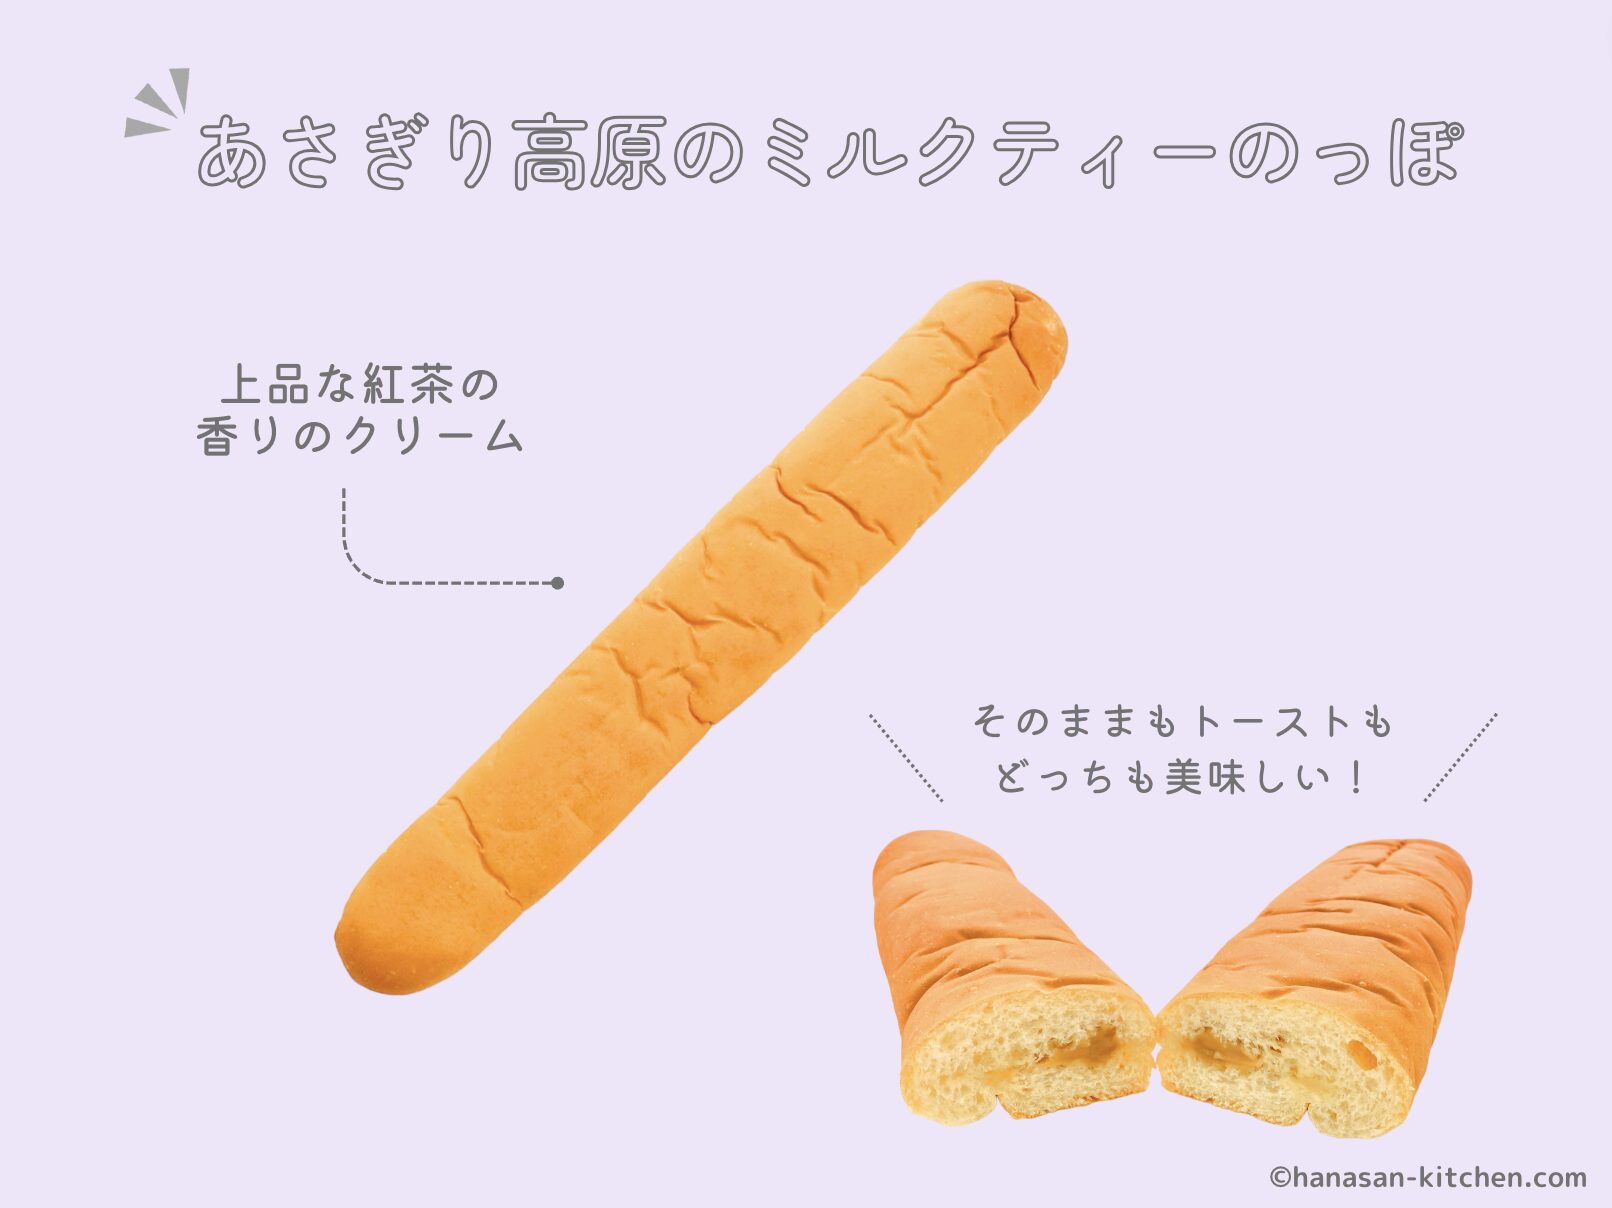 のっぽパン(あさぎり高原のミルクティー)の解説